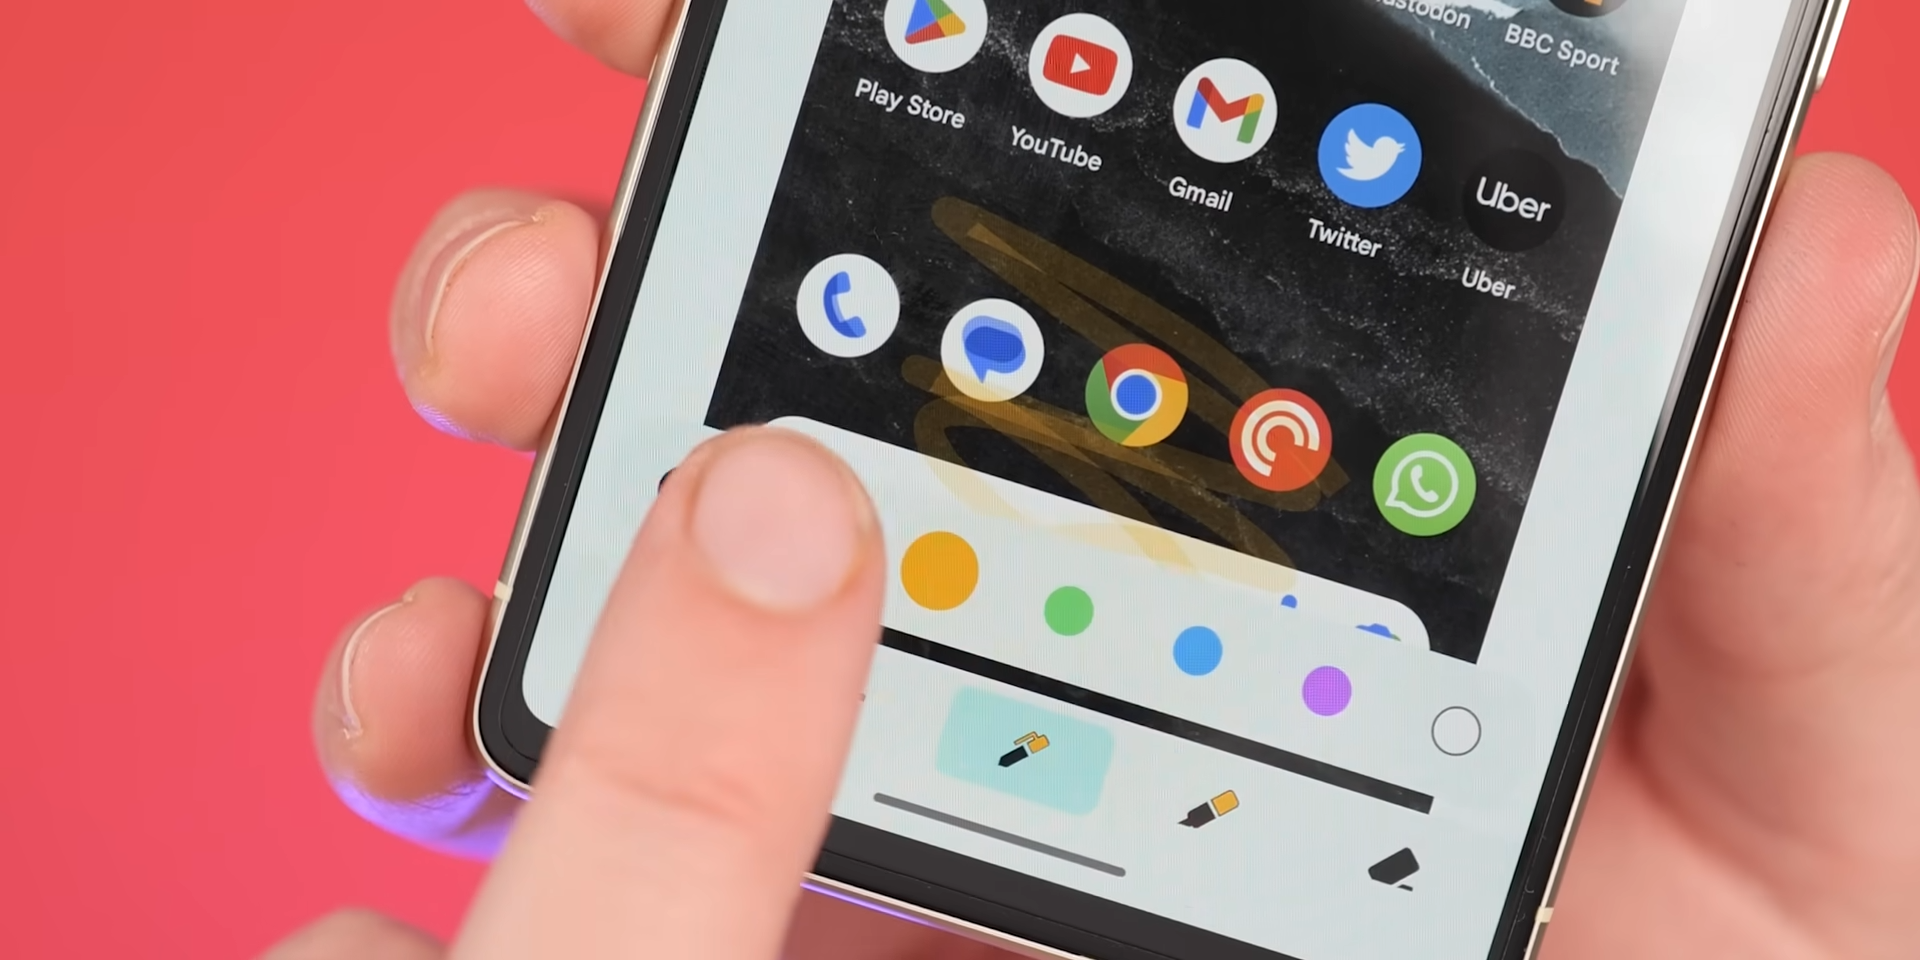 Android 14 Beta 1 - Wybrany kolor na ikonach pisaków przy edycji screenshot-ów